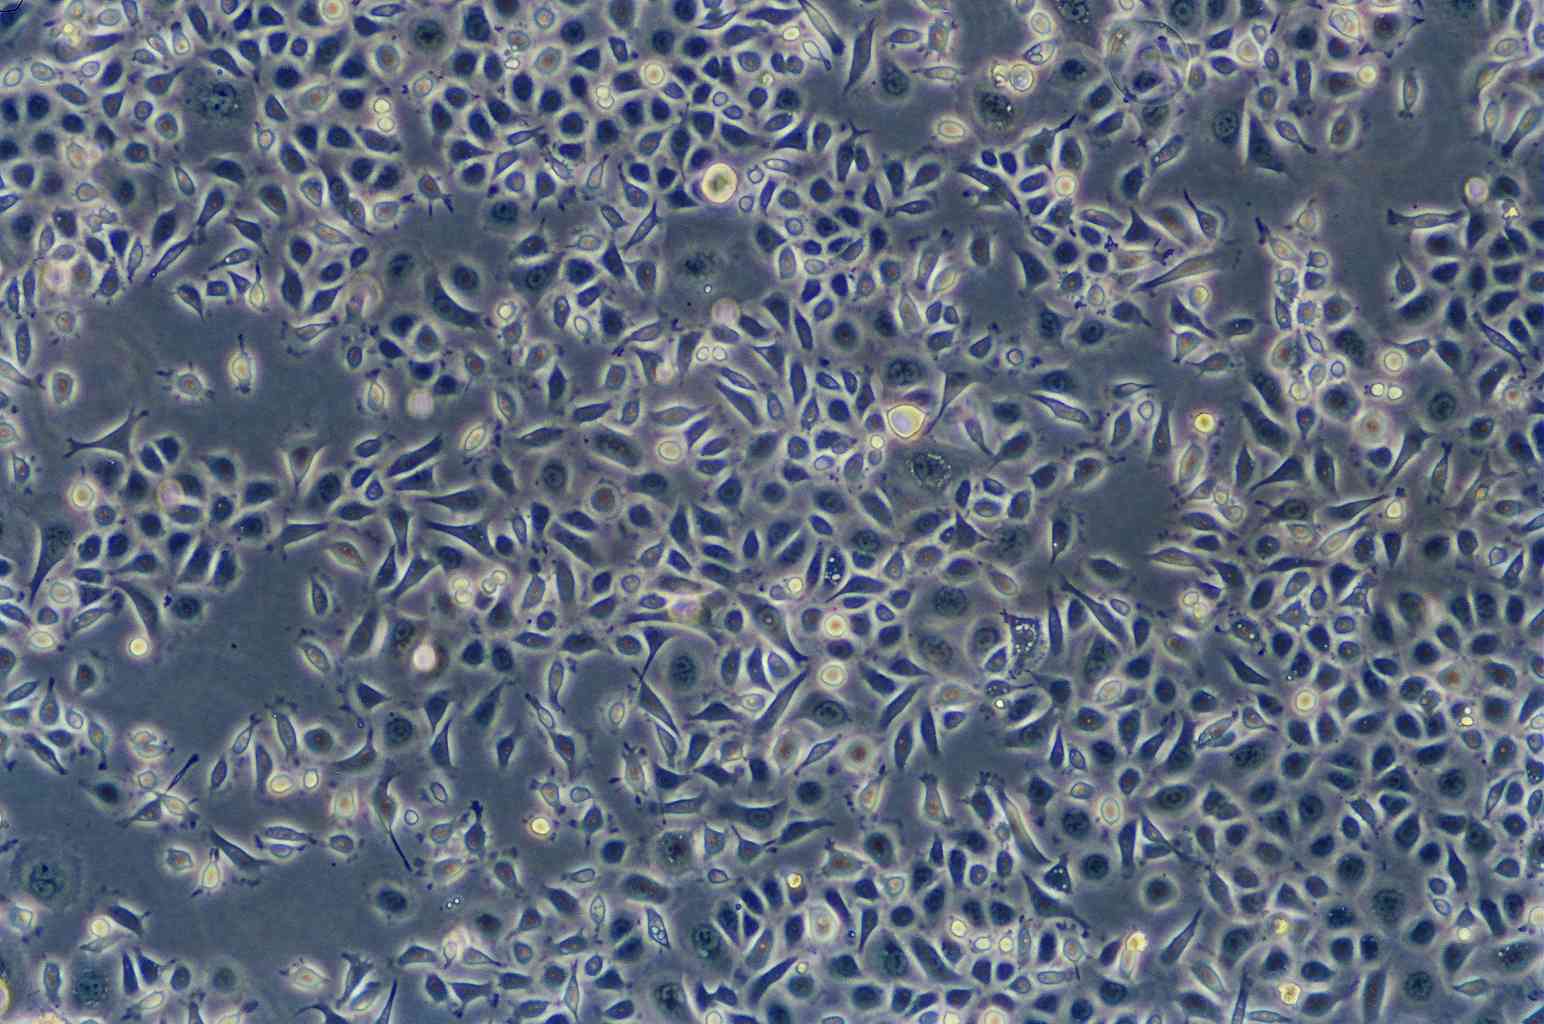 Hs 746.T Cells